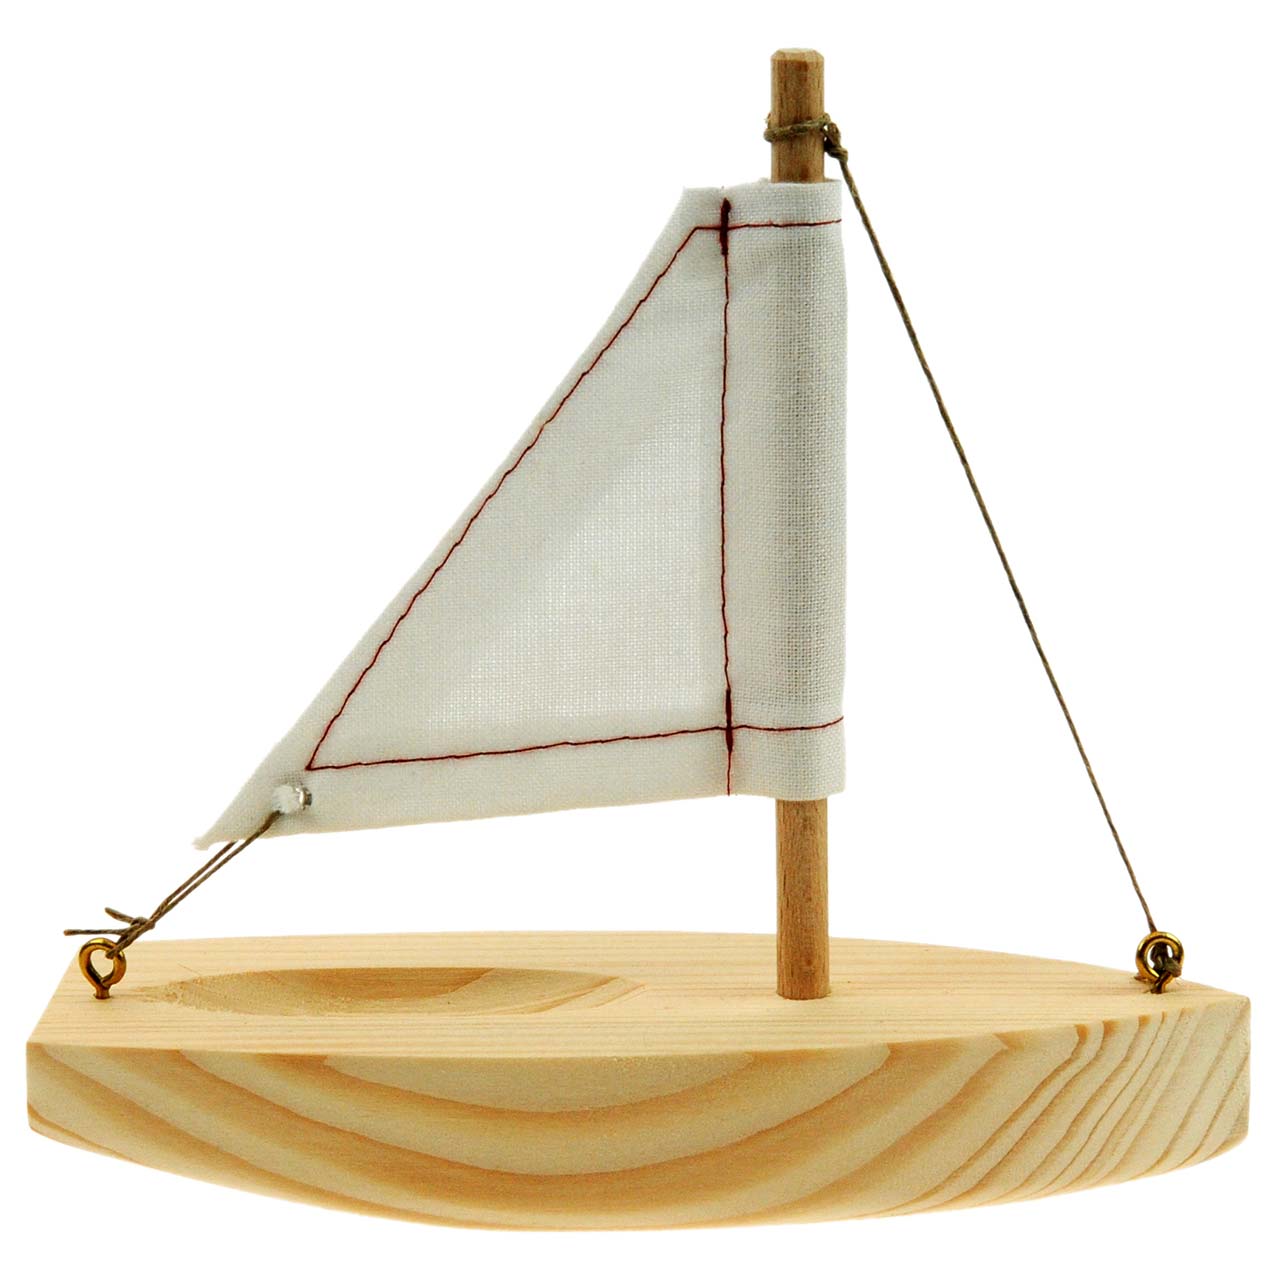 DIY Holz Segelboot Holzboot Boot Modellbausatz Kinder Basteln Spielzeug Kits 